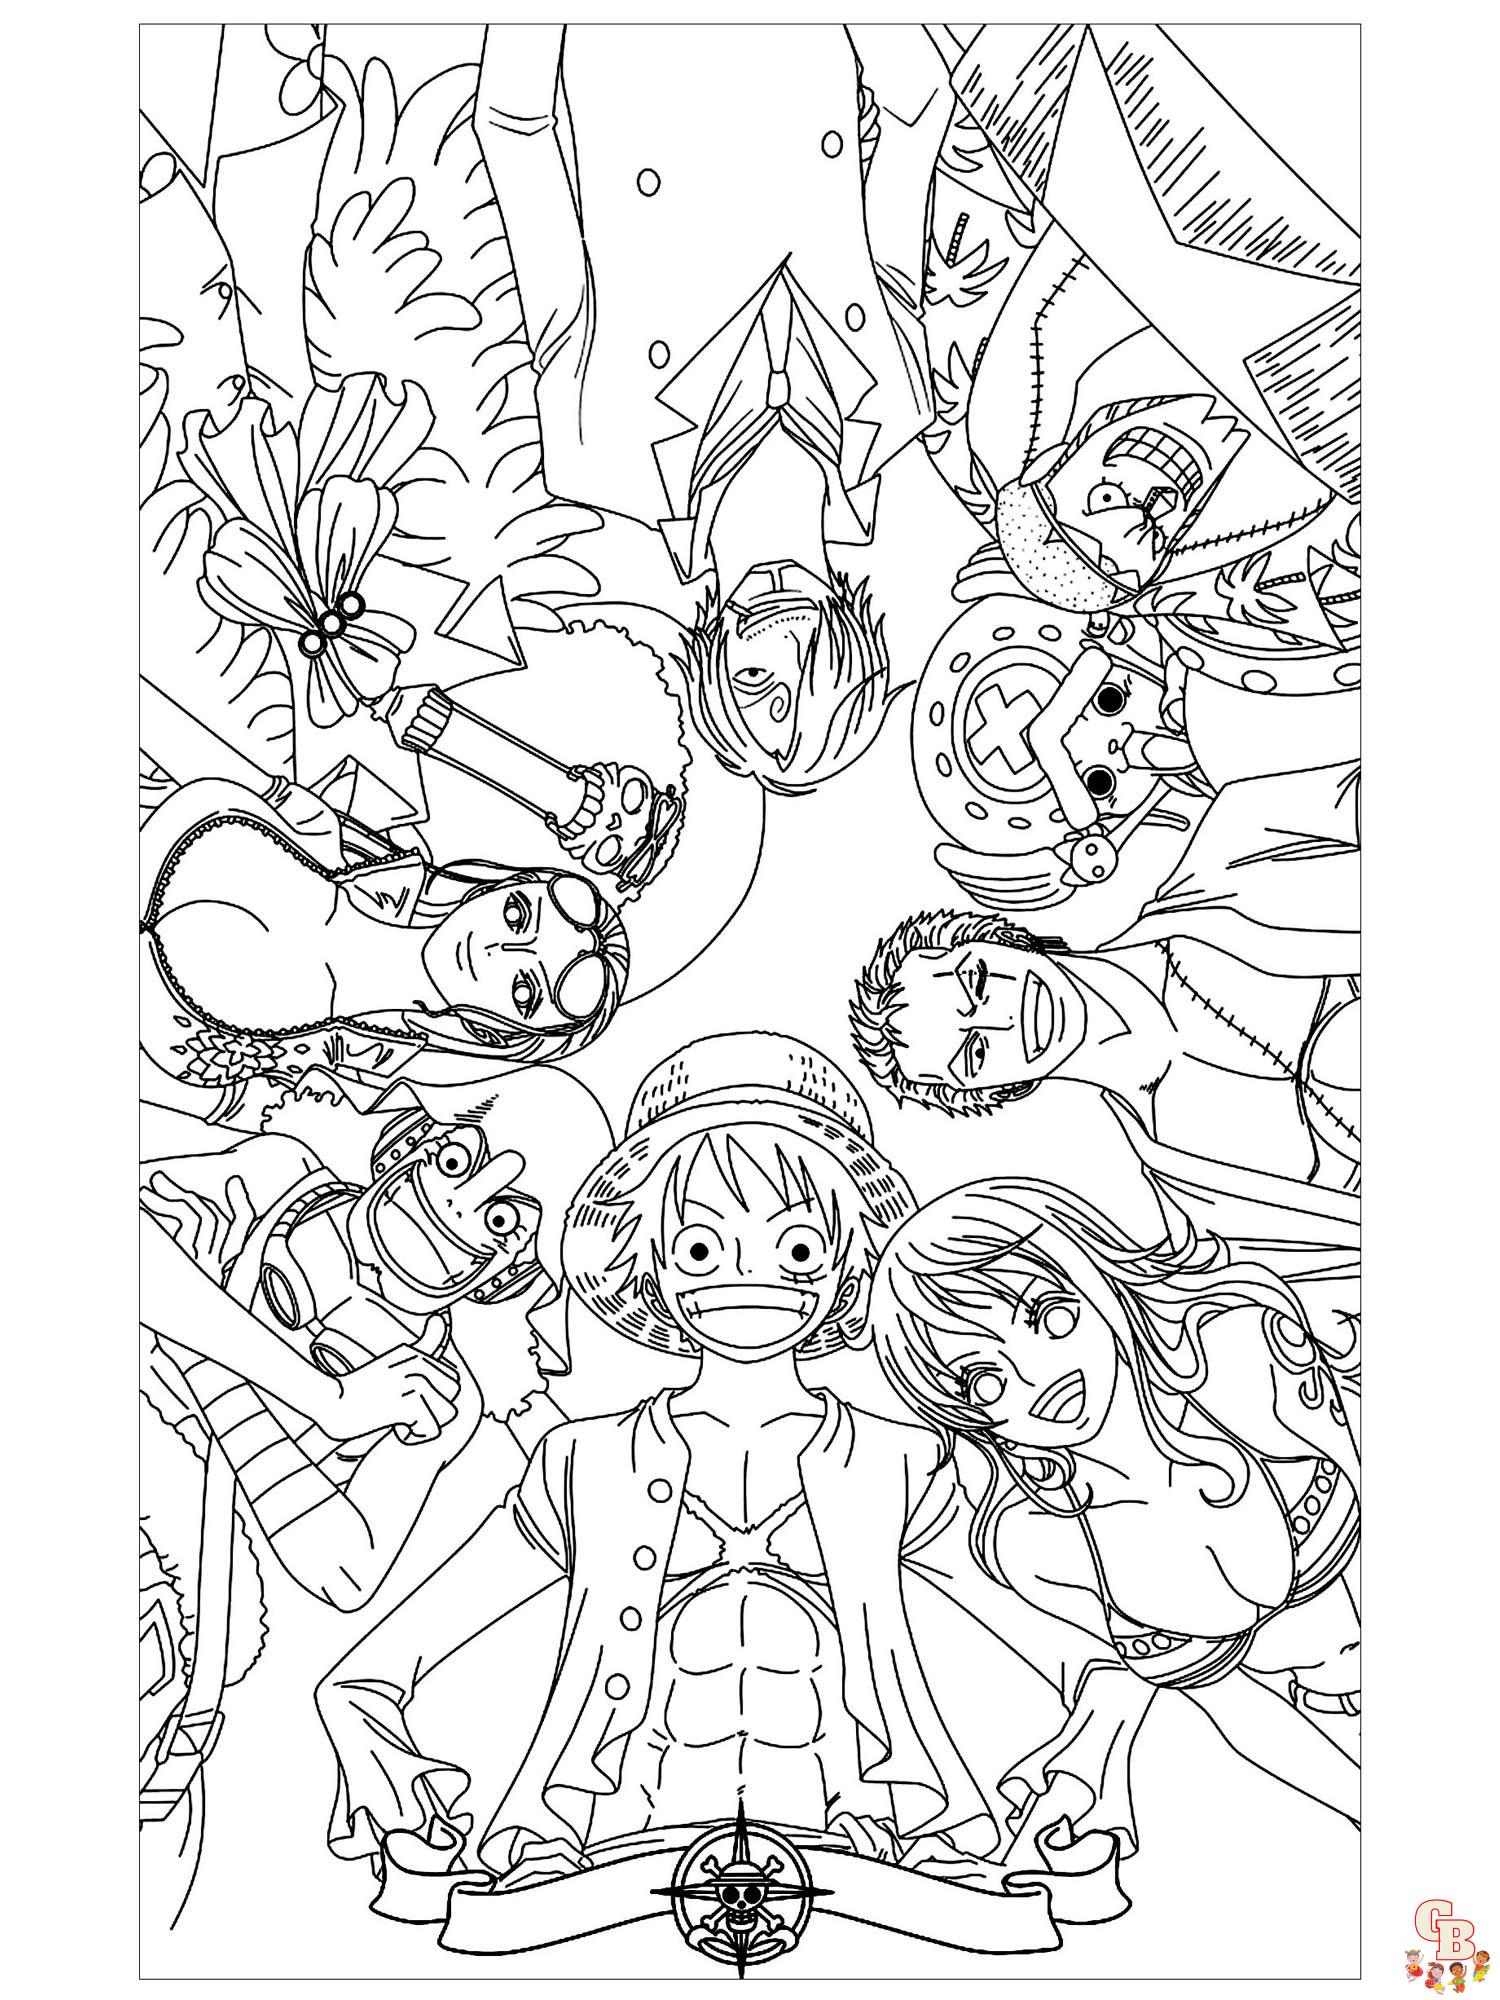 Страницы для раскрашивания One Piece